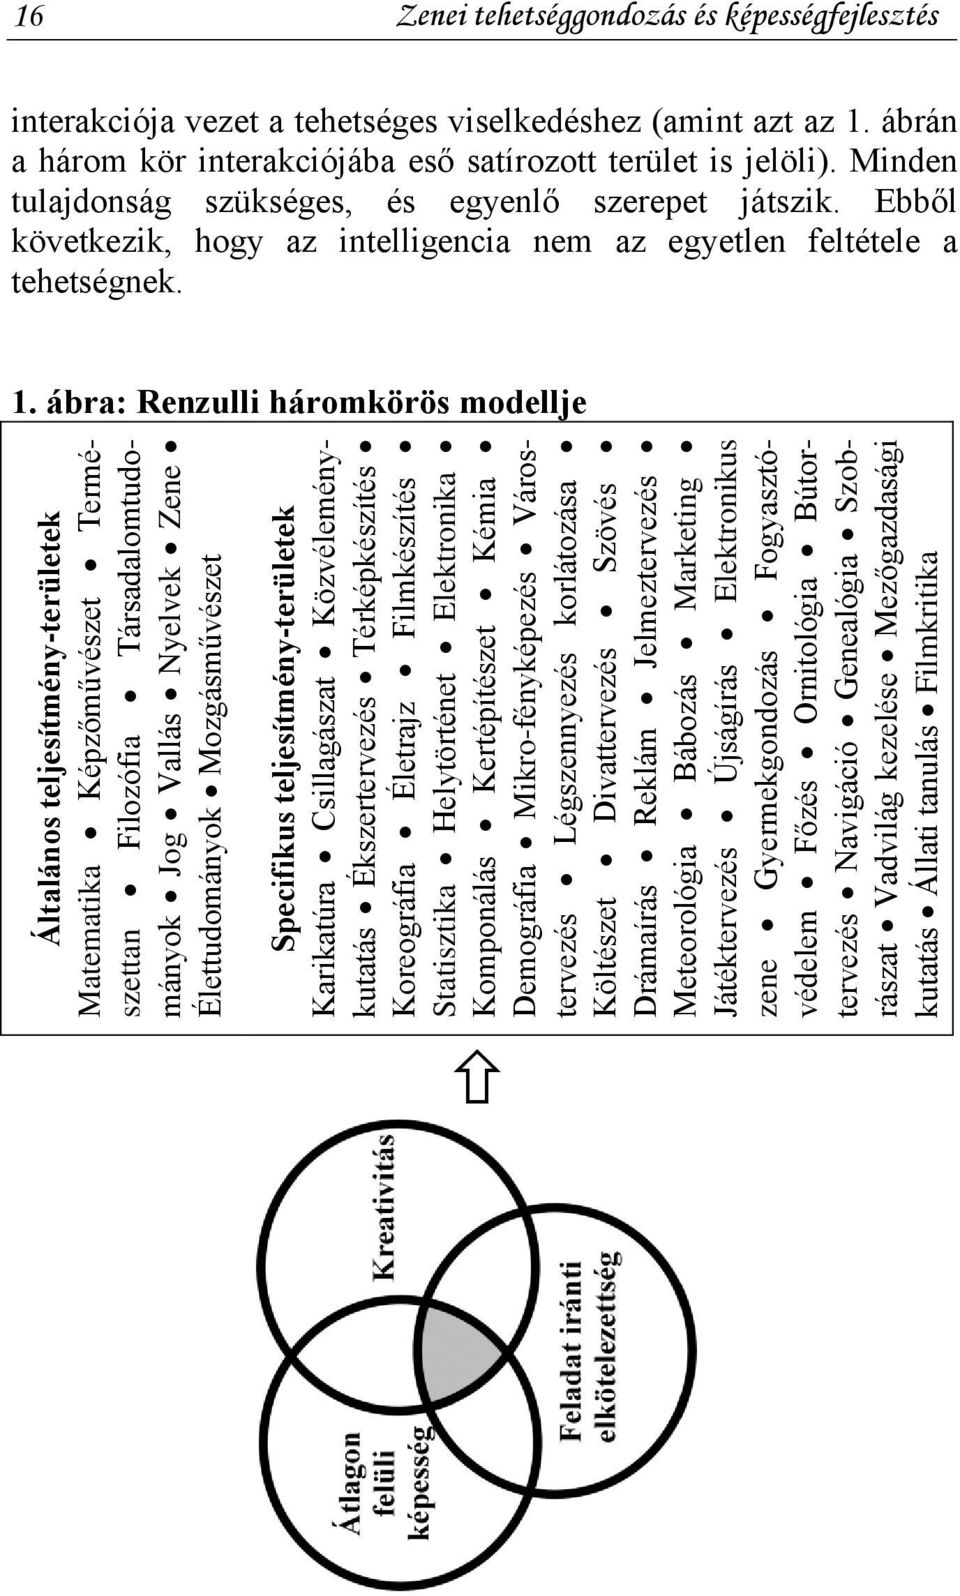 ábra: Renzulli háromkörös modellje Általános teljesítmény-területek Matematika Képzőművészet Természettan Filozófia Társadalomtudományok Jog Vallás Nyelvek Zene Élettudományok Mozgásművészet